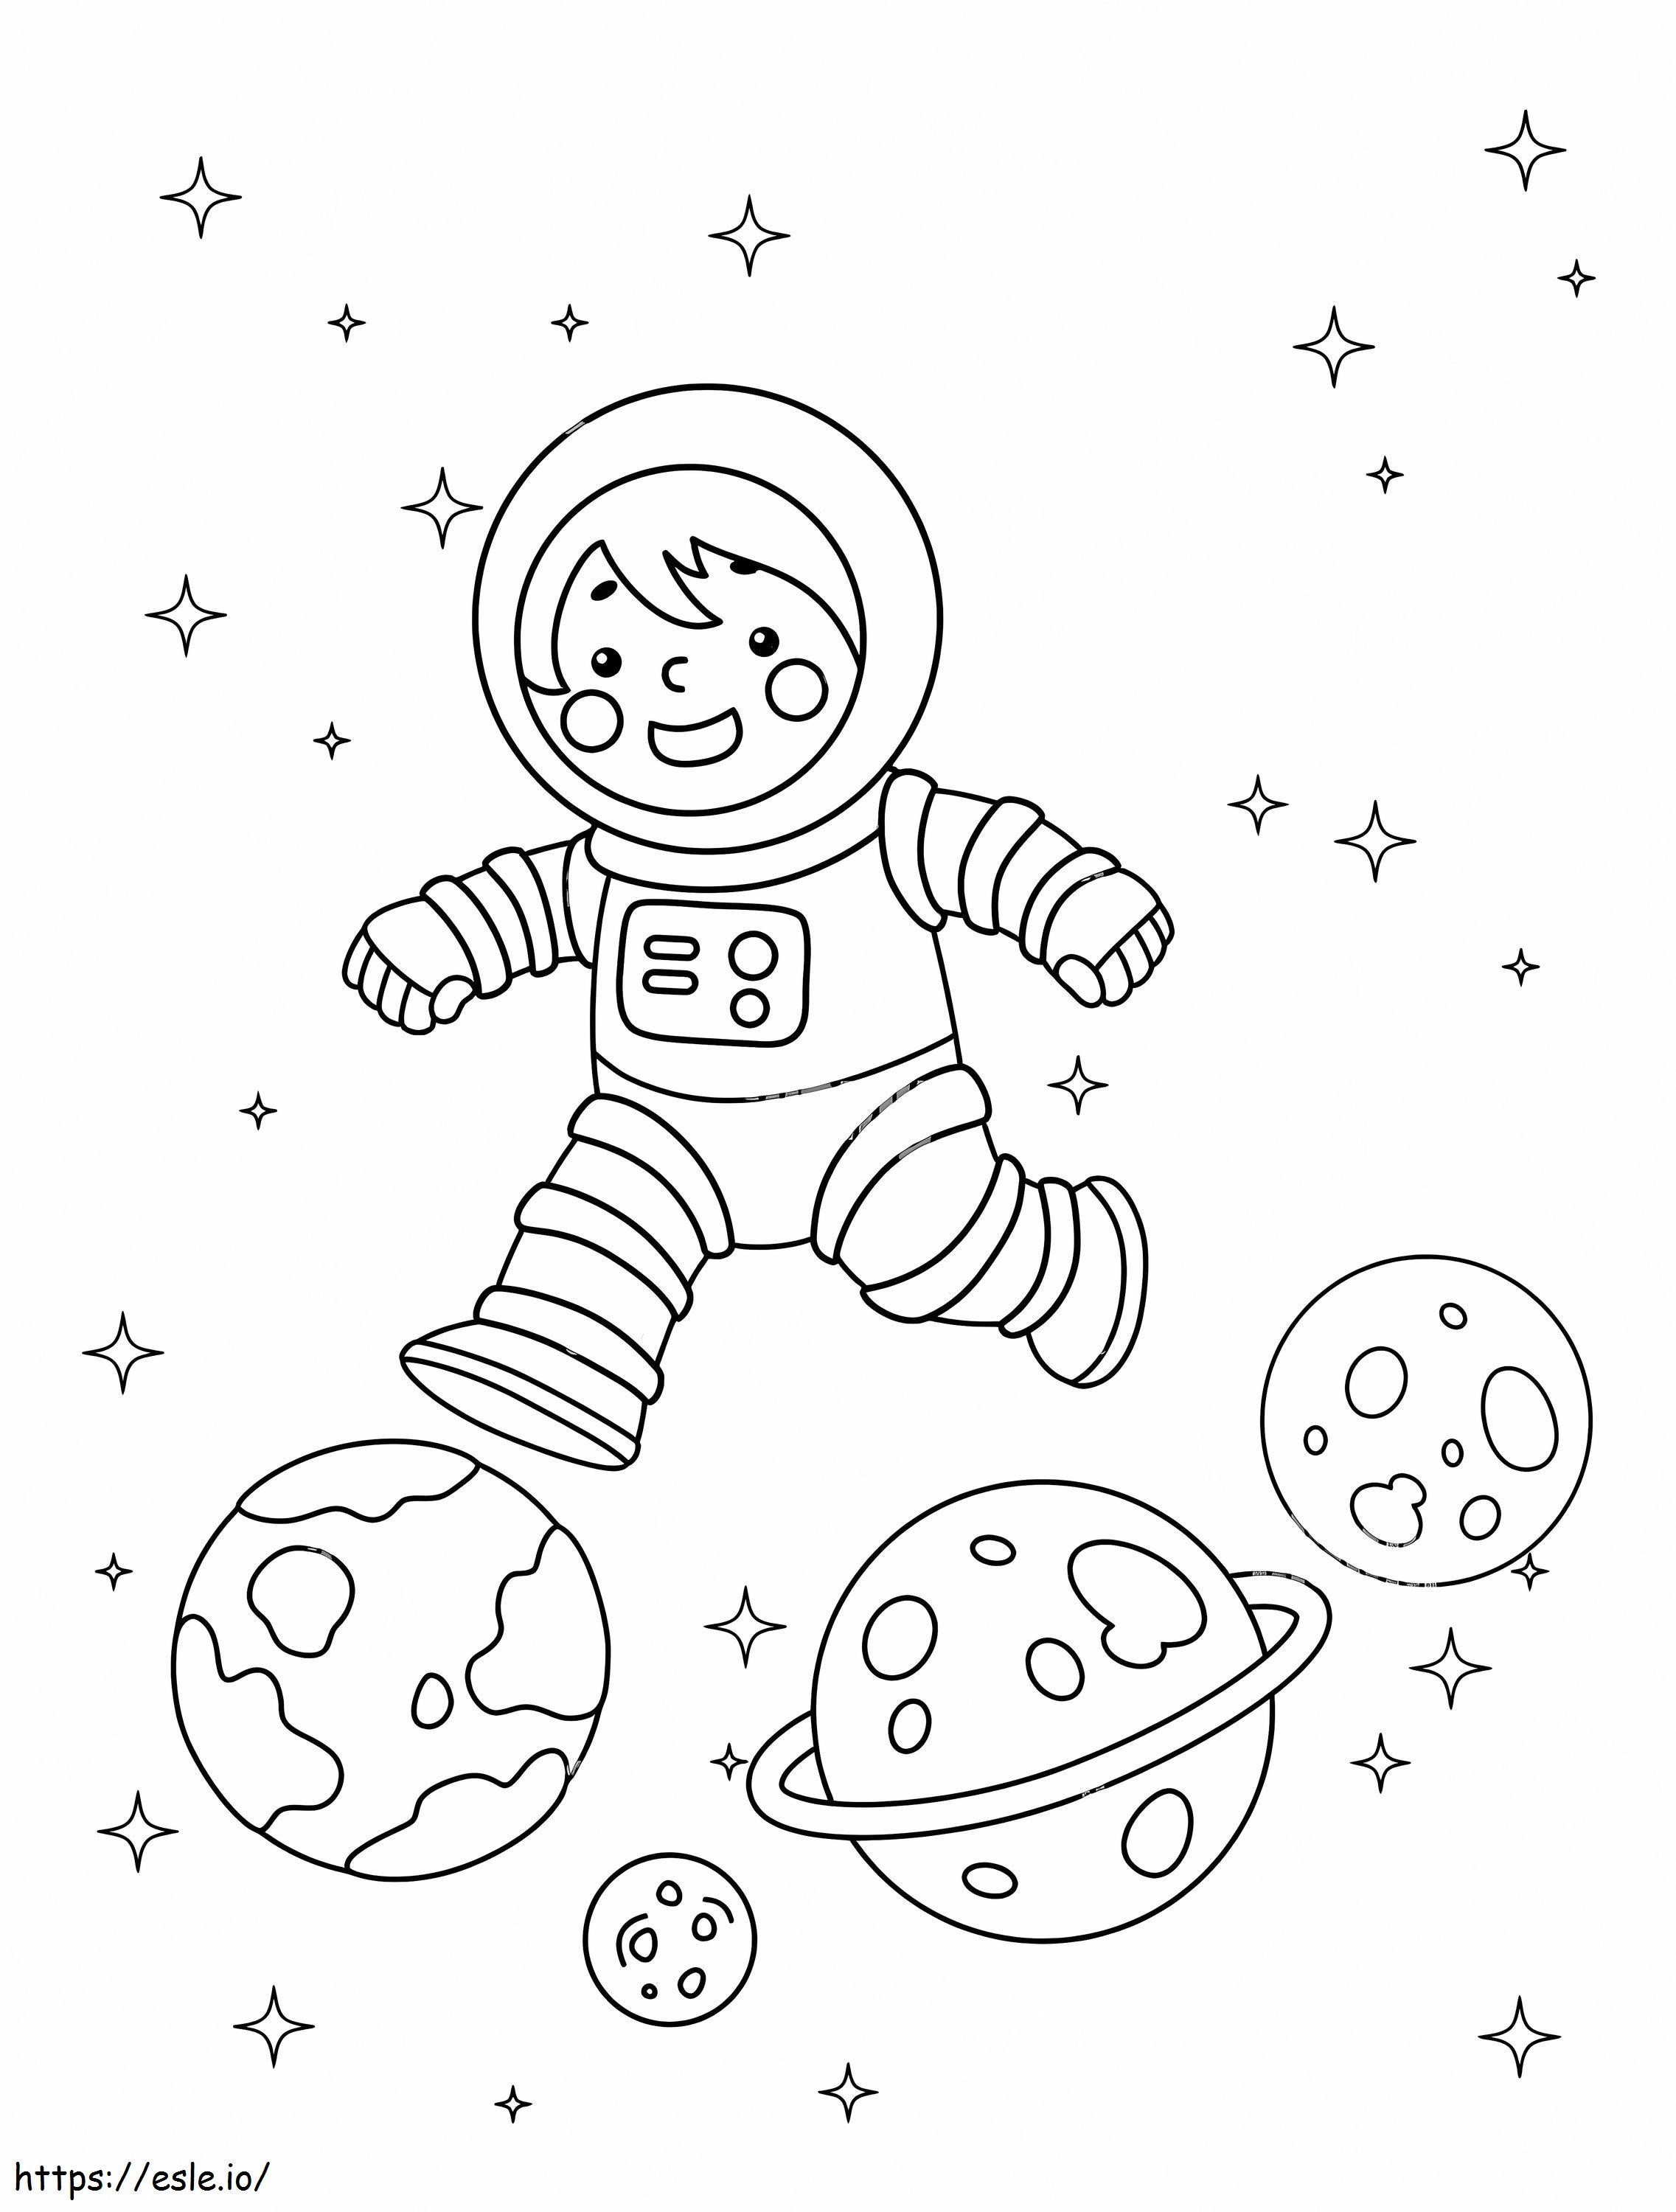 El astronauta y los planetas para colorear